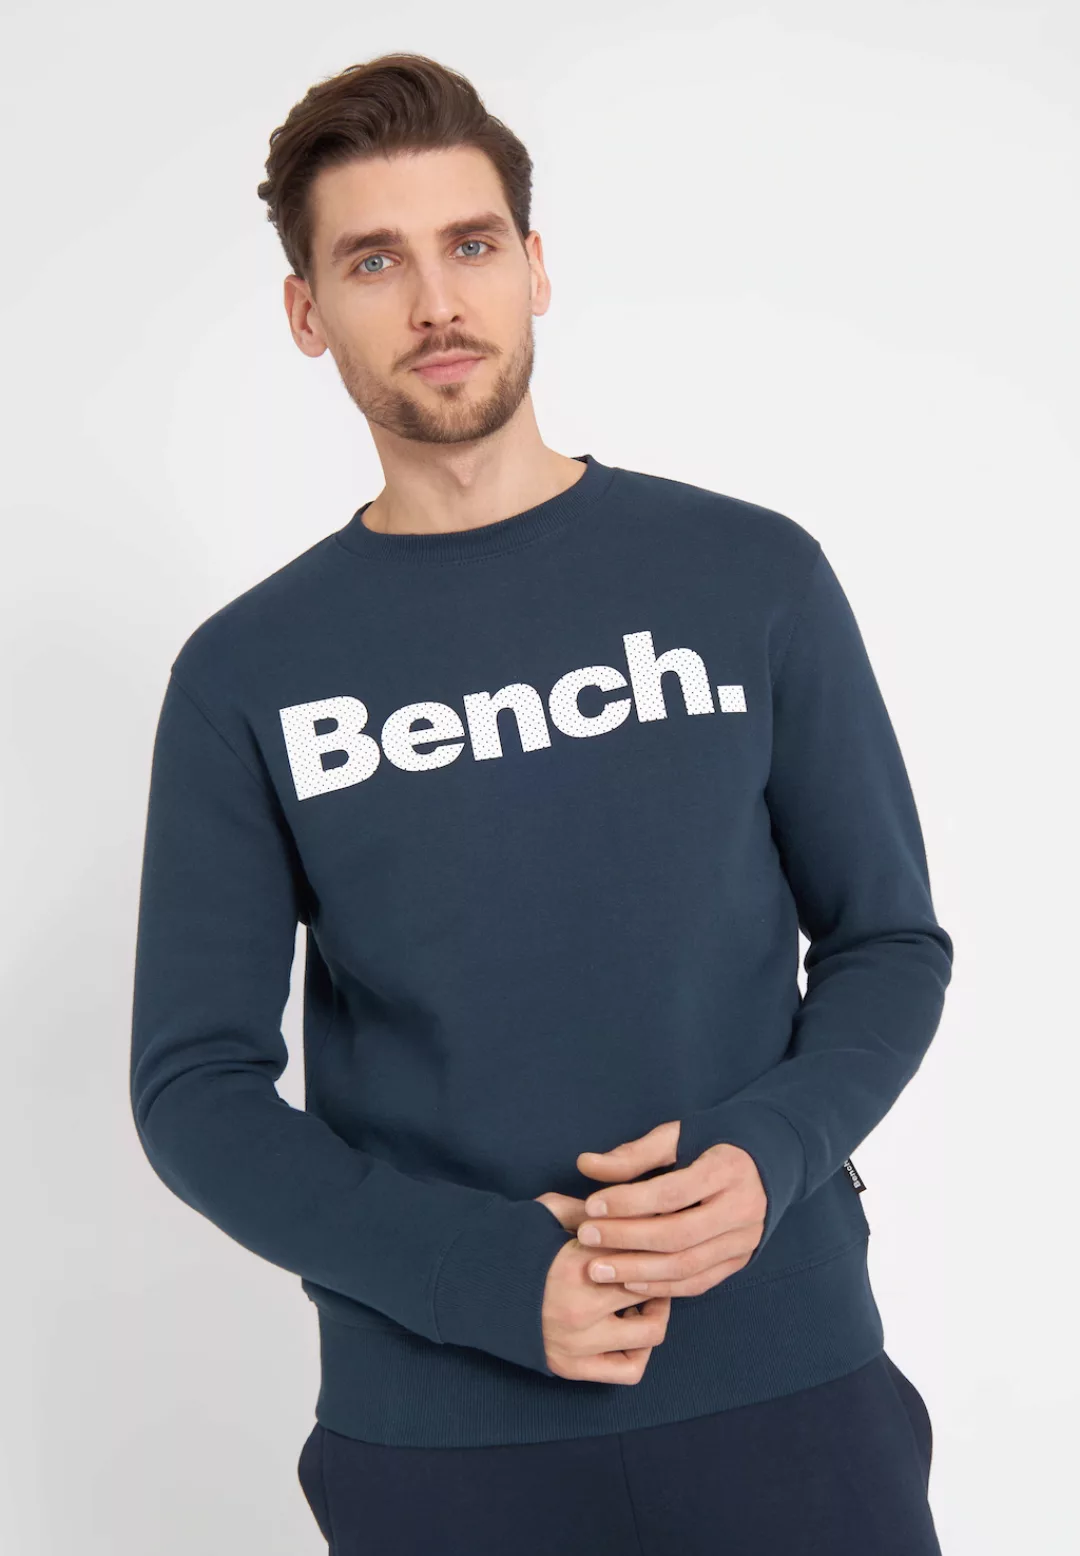 Bench. Sweatshirt TIPSTER günstig online kaufen